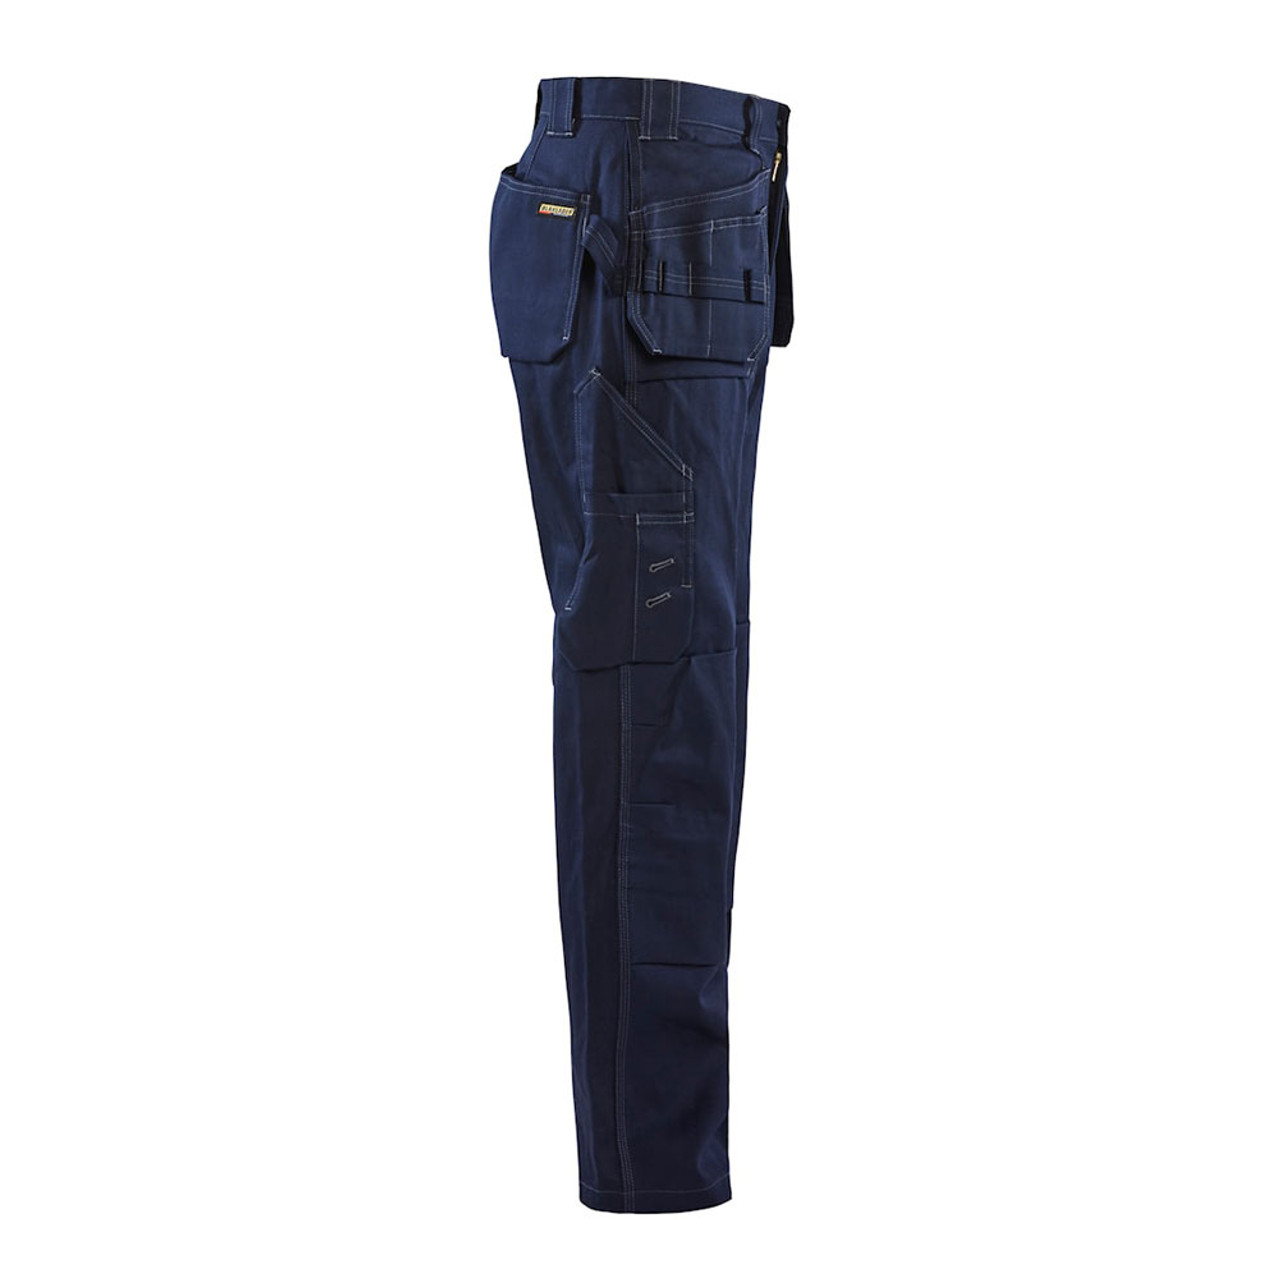 Blaklader FR Navy Blue Pants 167615508900